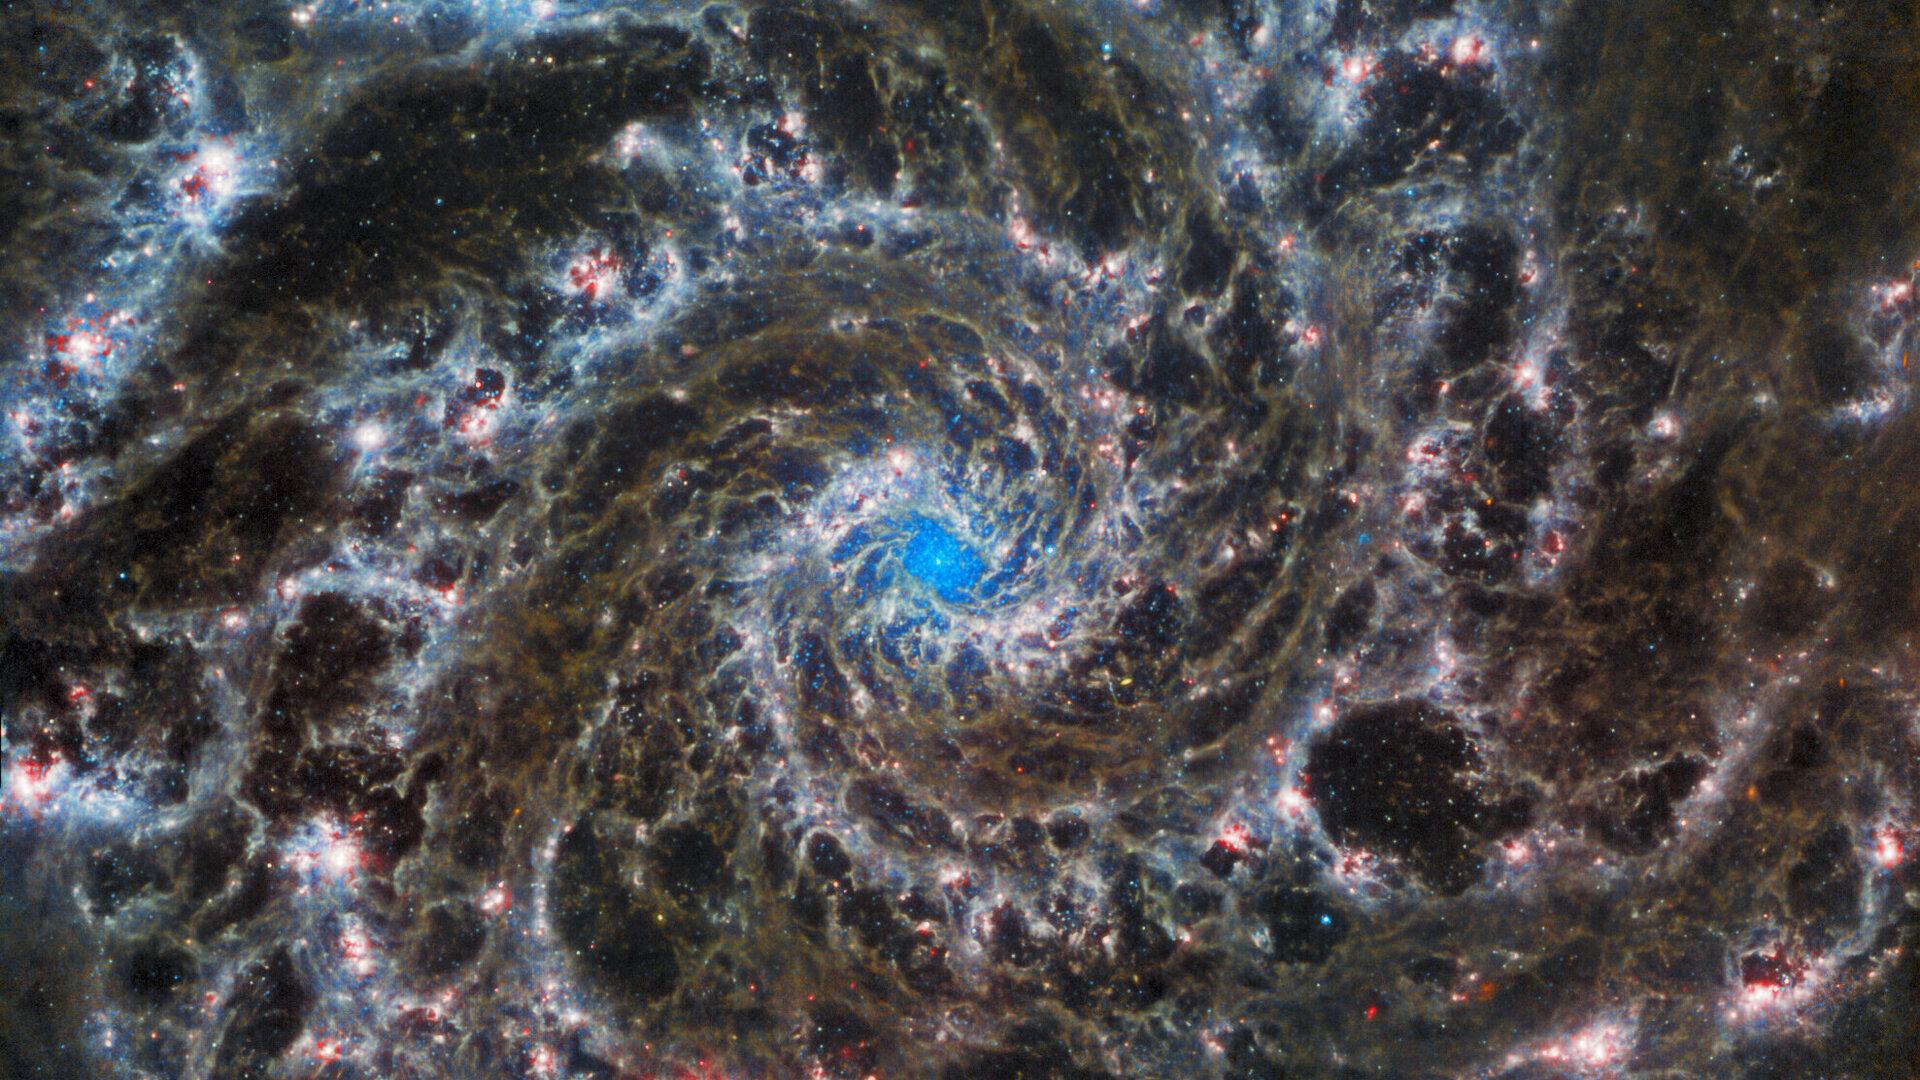 Le cœur de la galaxie M74, la "galaxie fantôme". JWST révèle de délicats filaments de gaz et de poussière dans les bras spiraux qui s'enroulent vers l'extérieur à partir du centre. L'absence de gaz dans la région nucléaire permet de voir l'amas d'étoiles au centre de la galaxie. Observation avec l'instrument en infrarouge moyen (MIRI) de James Webb. [ESA/Webb, NASA & CSA - J. Lee and the PHANGS-JWST Team]